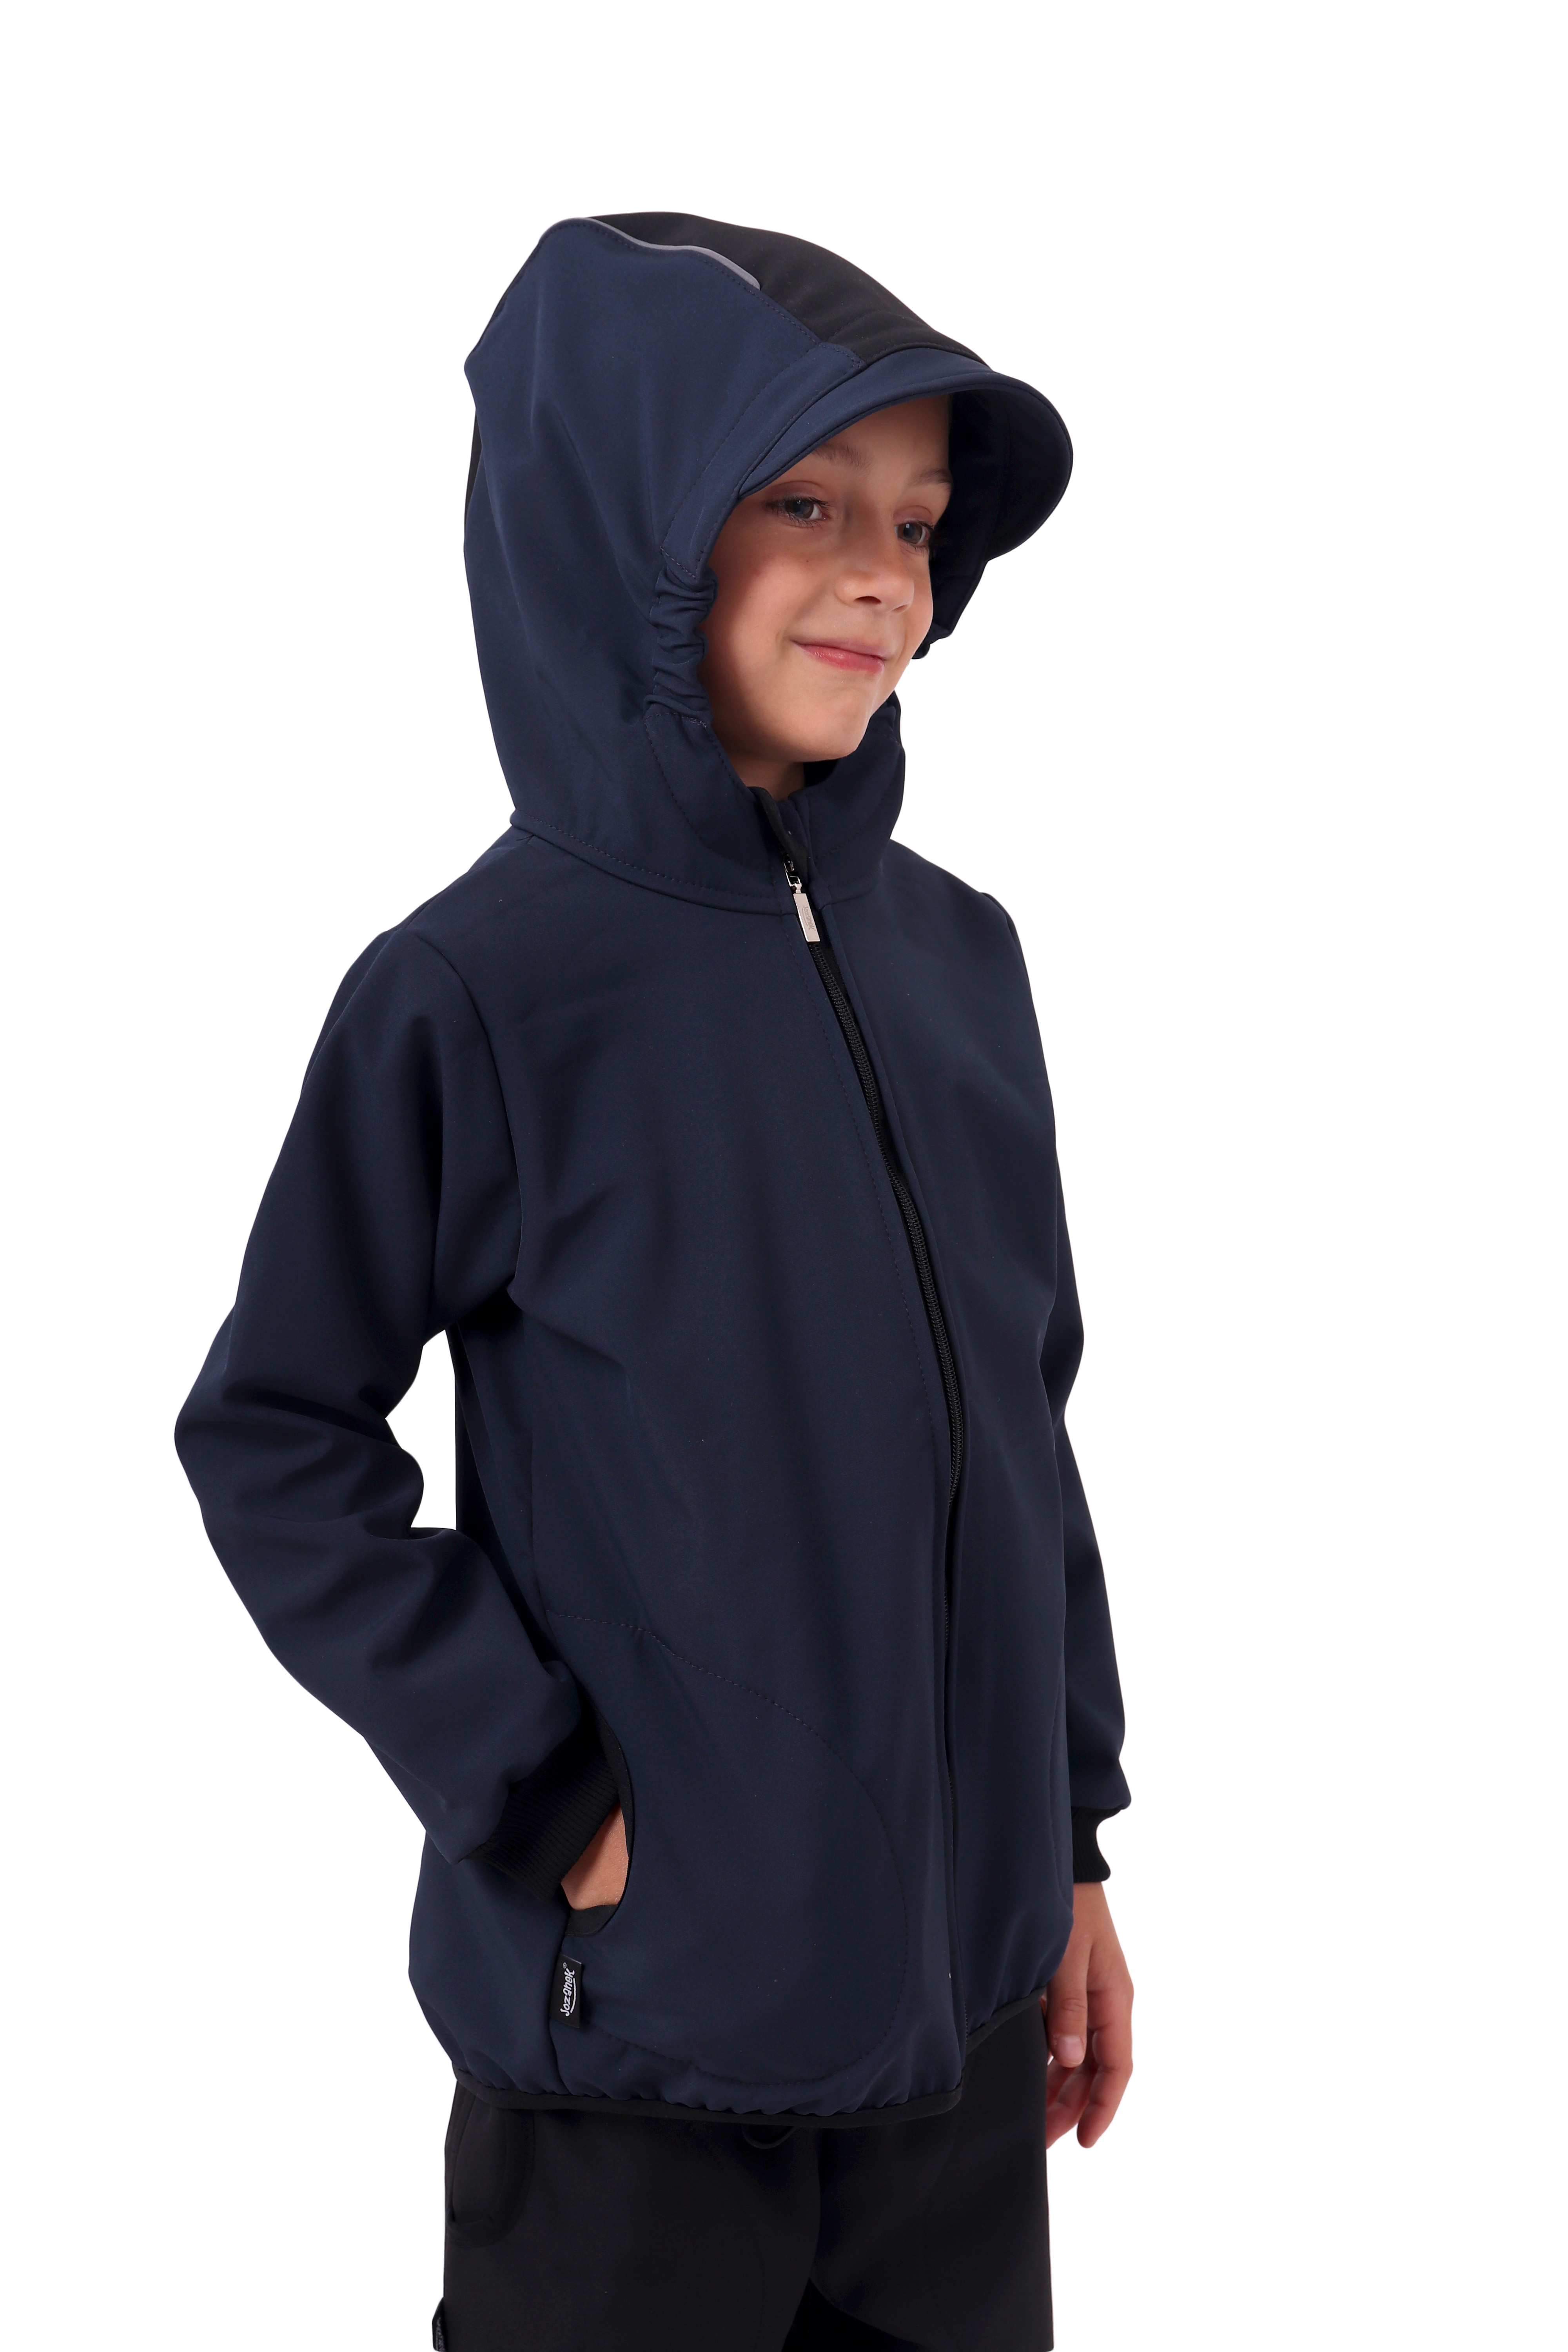 Detská softshellová bunda, tmavo modrá s čiernymi doplnkami, Kolekcia 2020